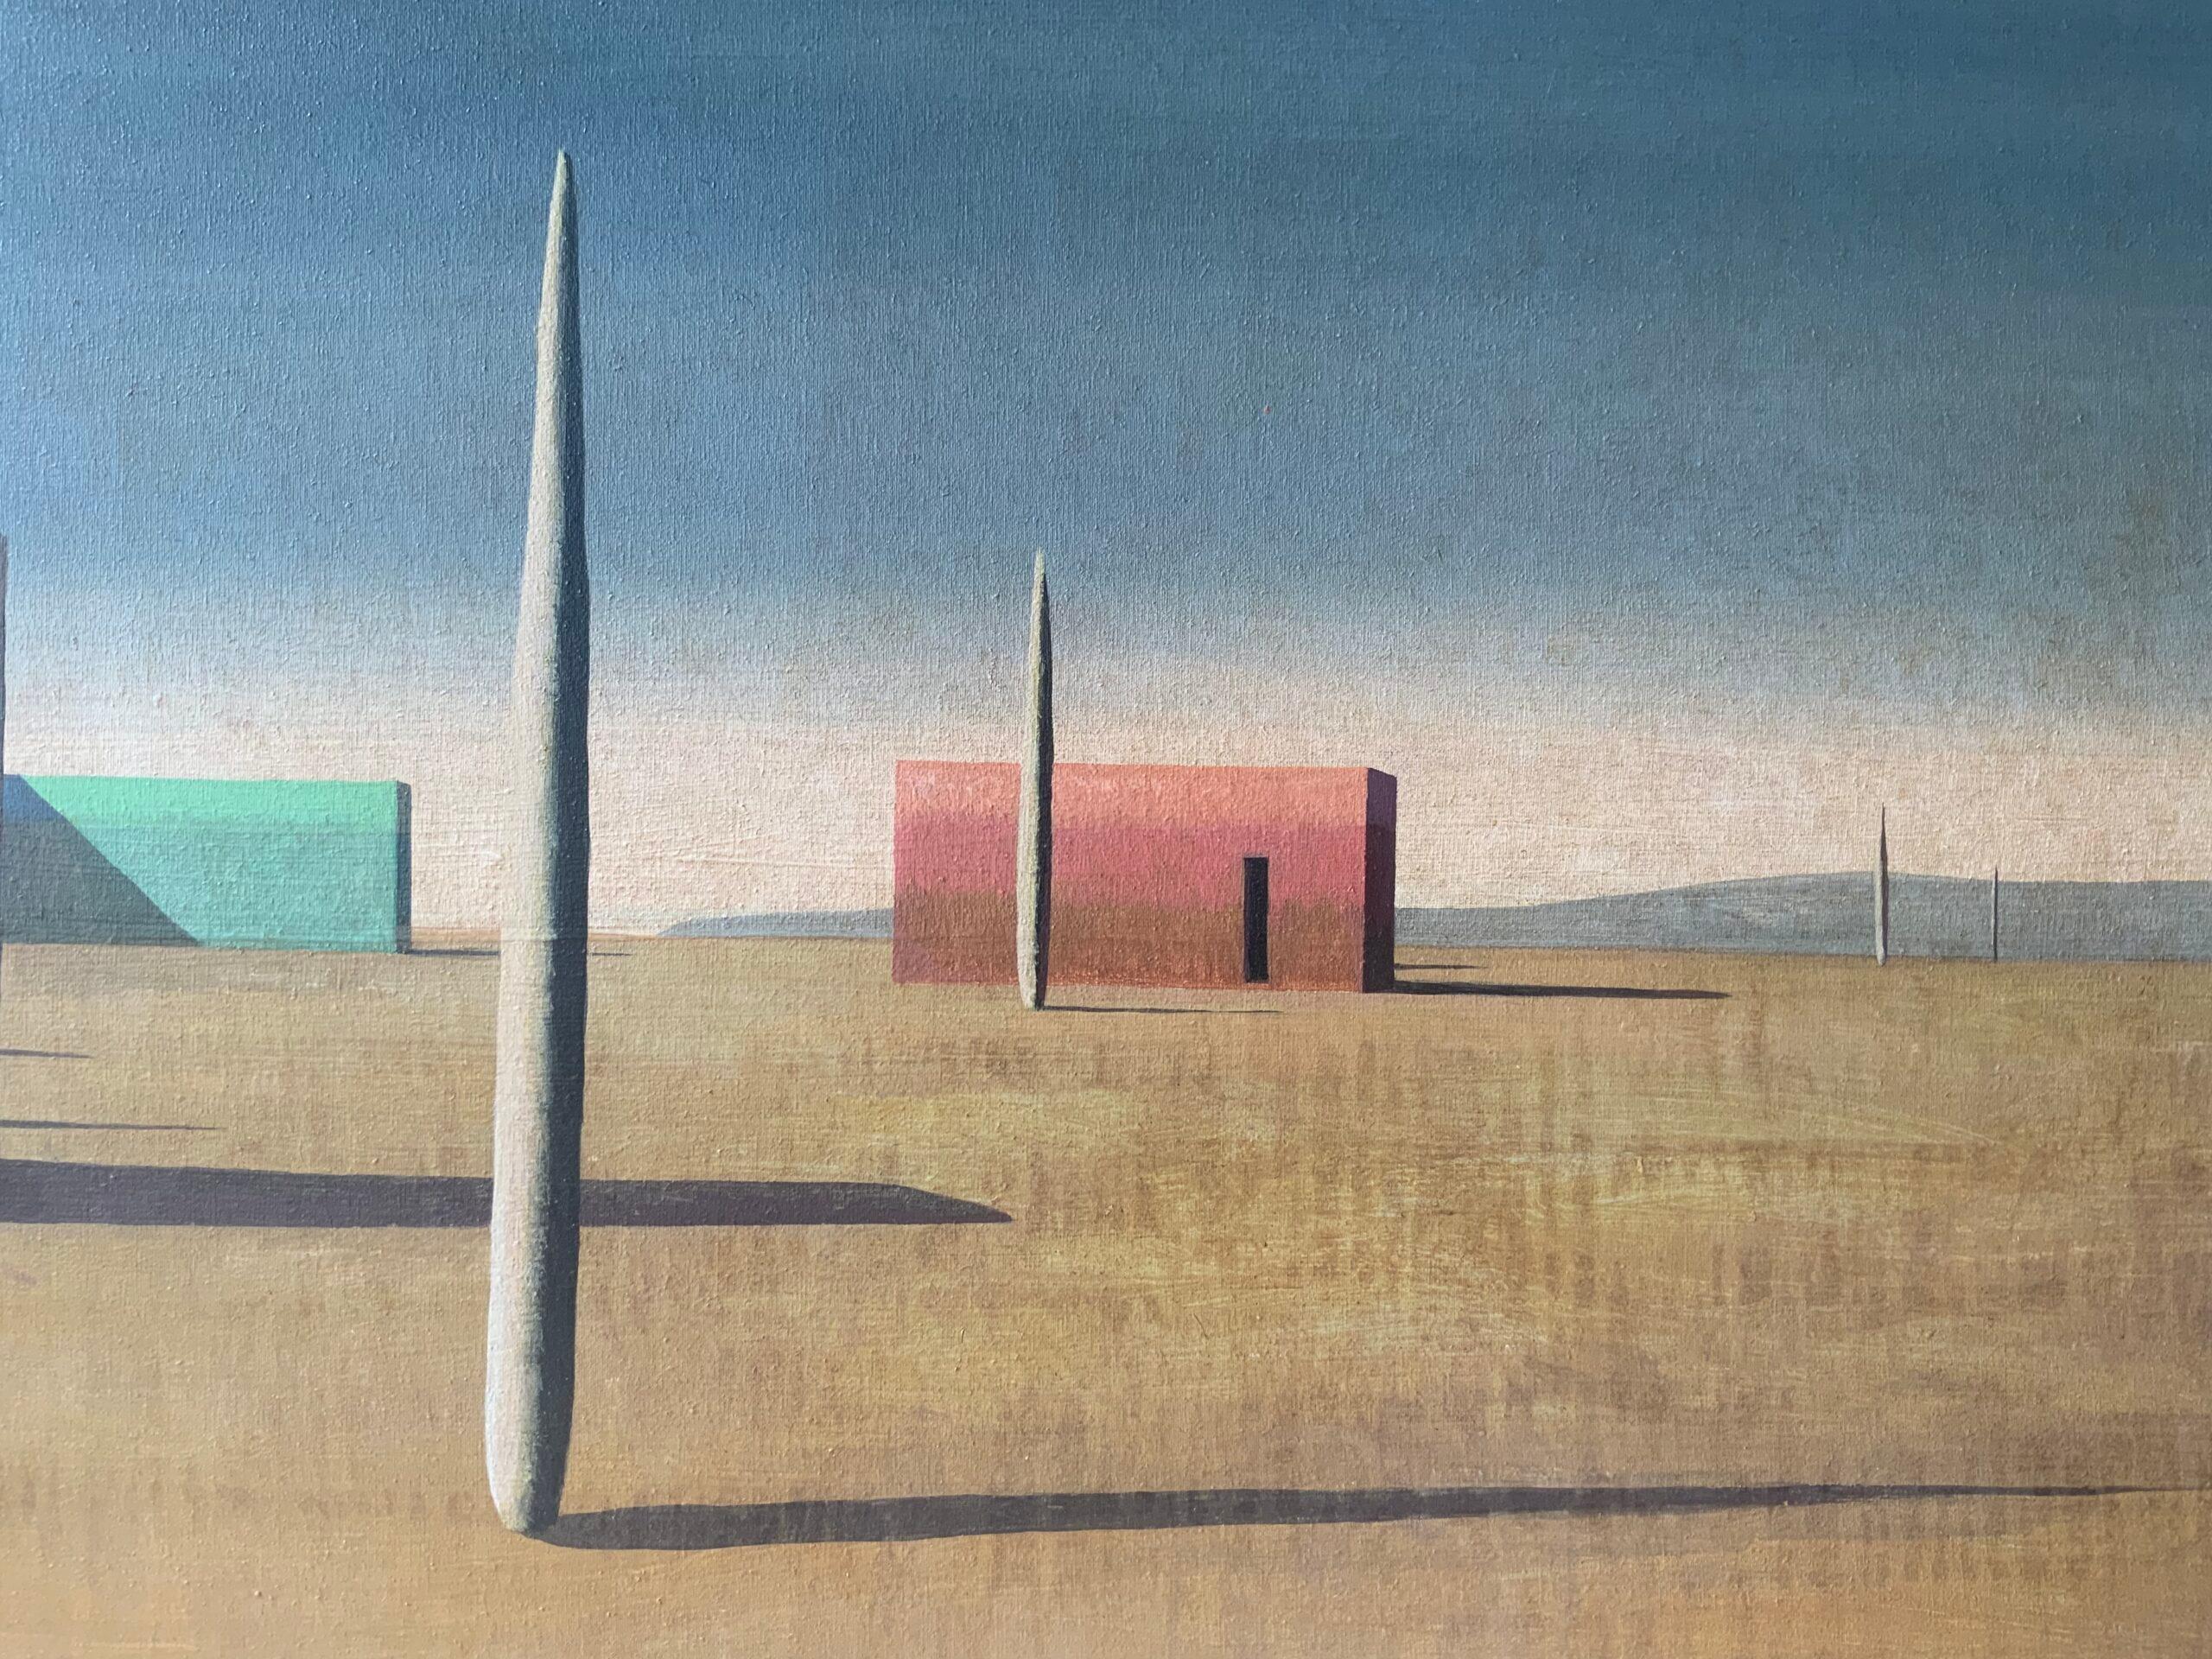 ENOIGROIG de Ramon Enrich - Peinture de paysage urbain géométrique, couleurs terre 2